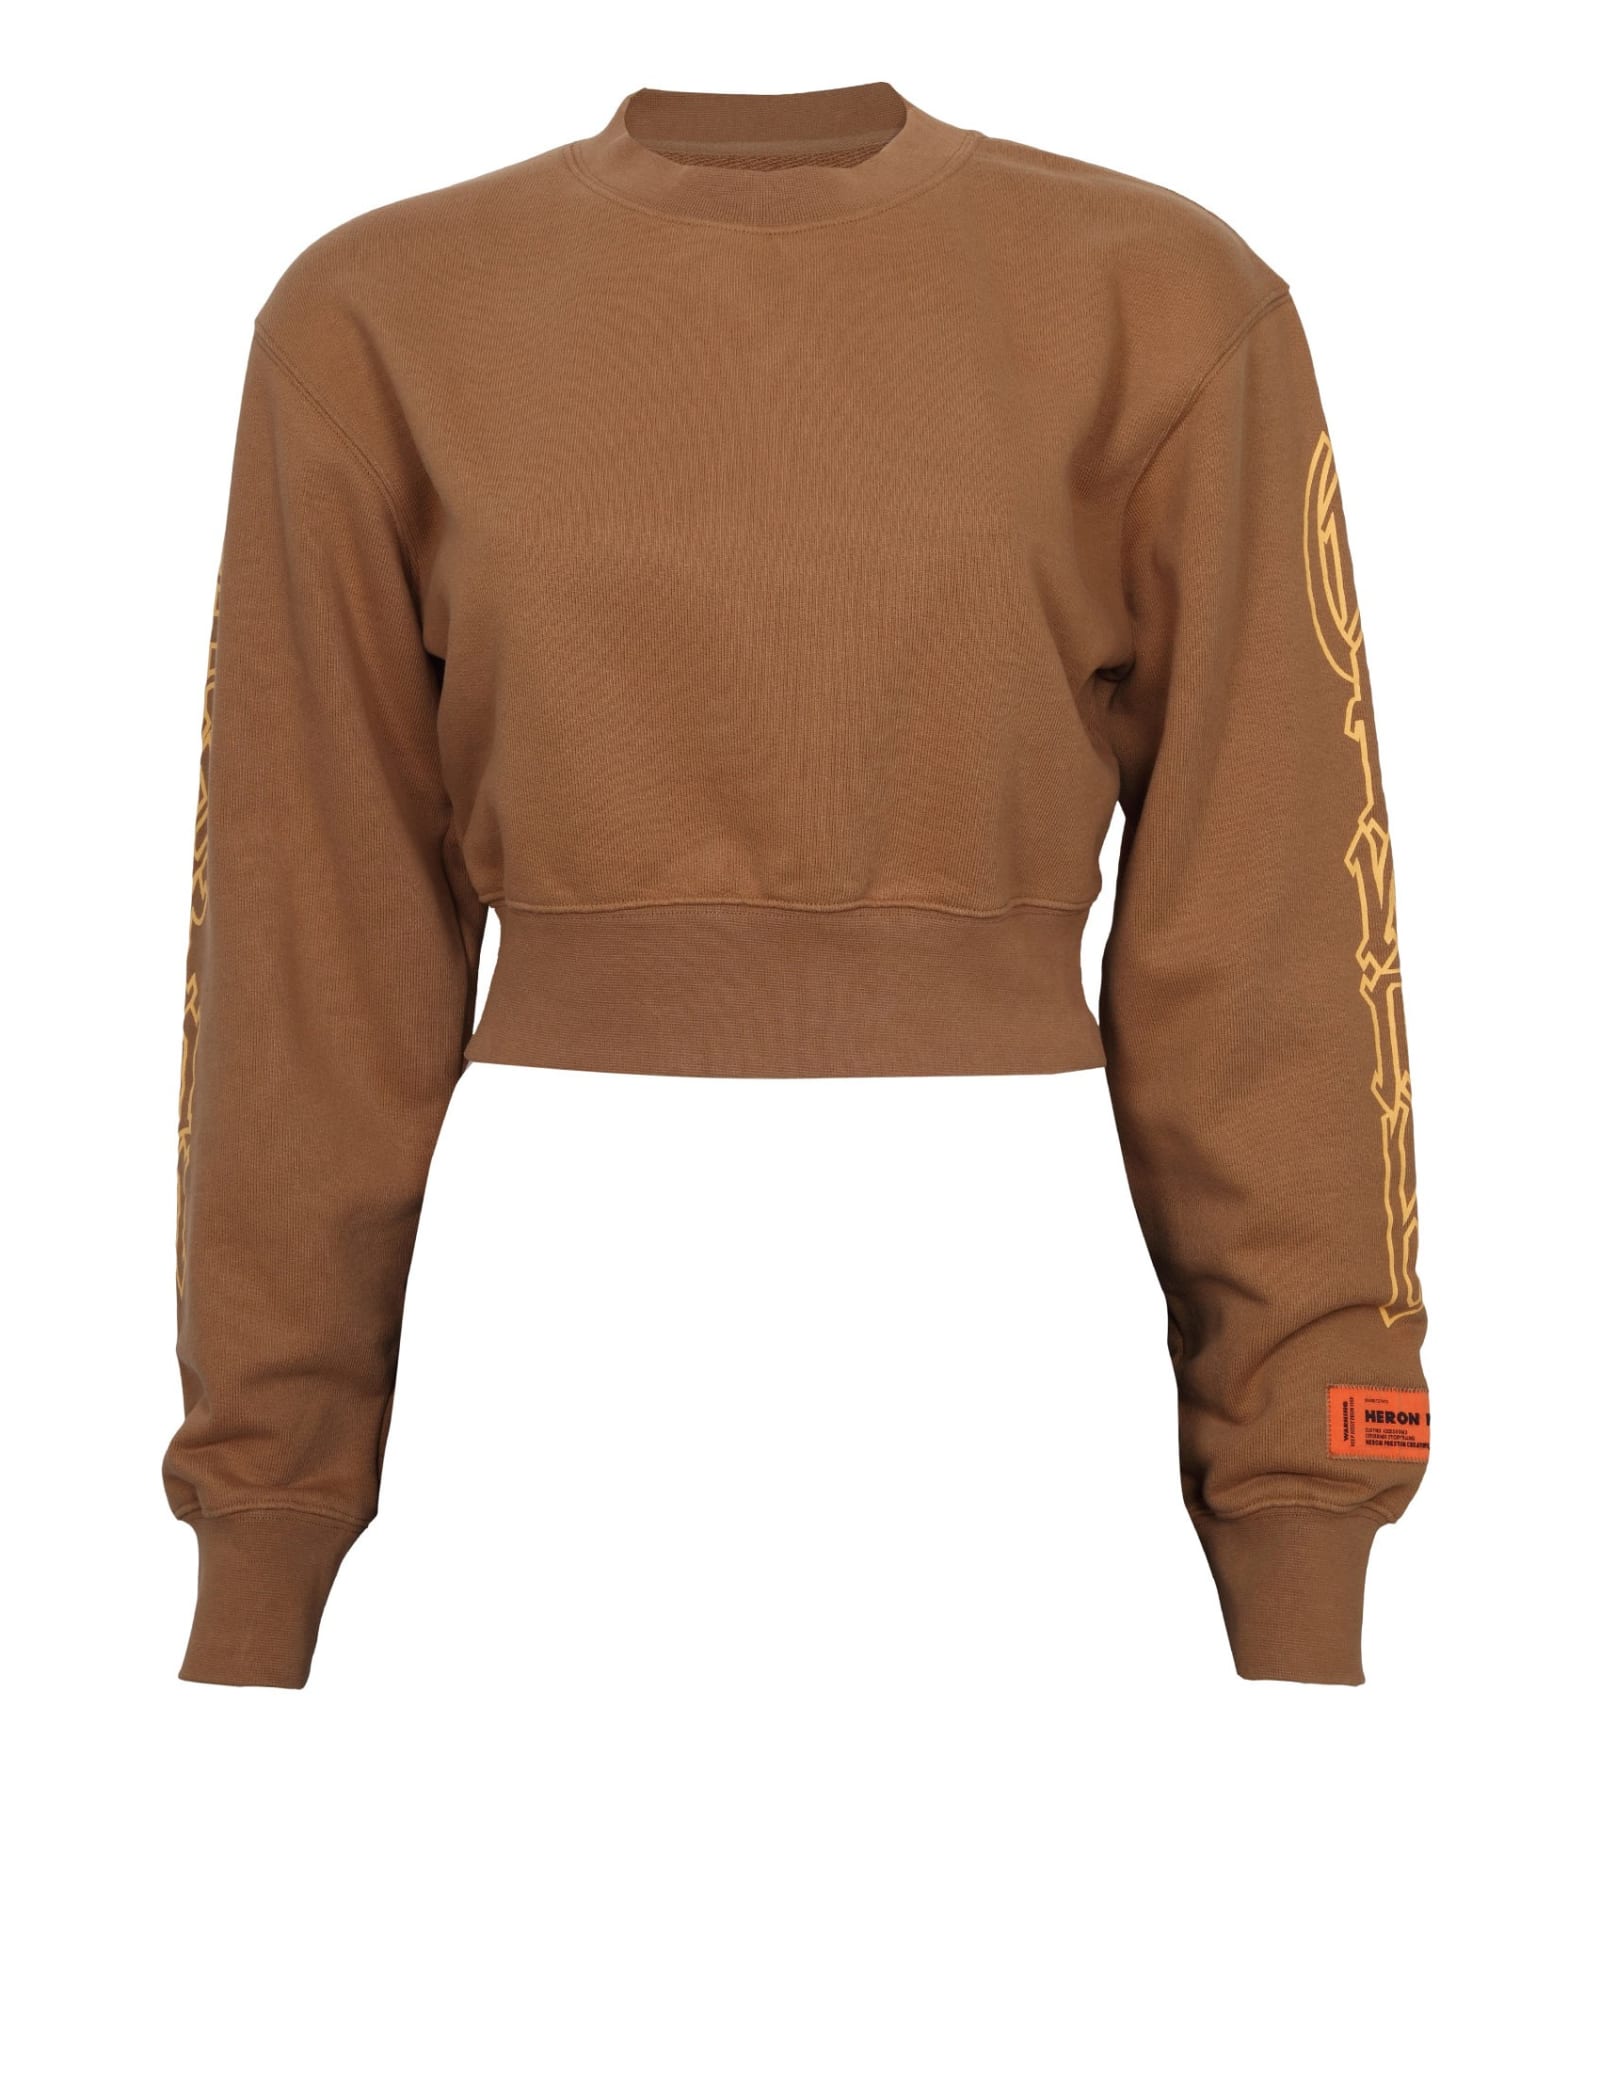 HERON PRESTON Cropped Sweatshirt In Tobacco Color Cotton